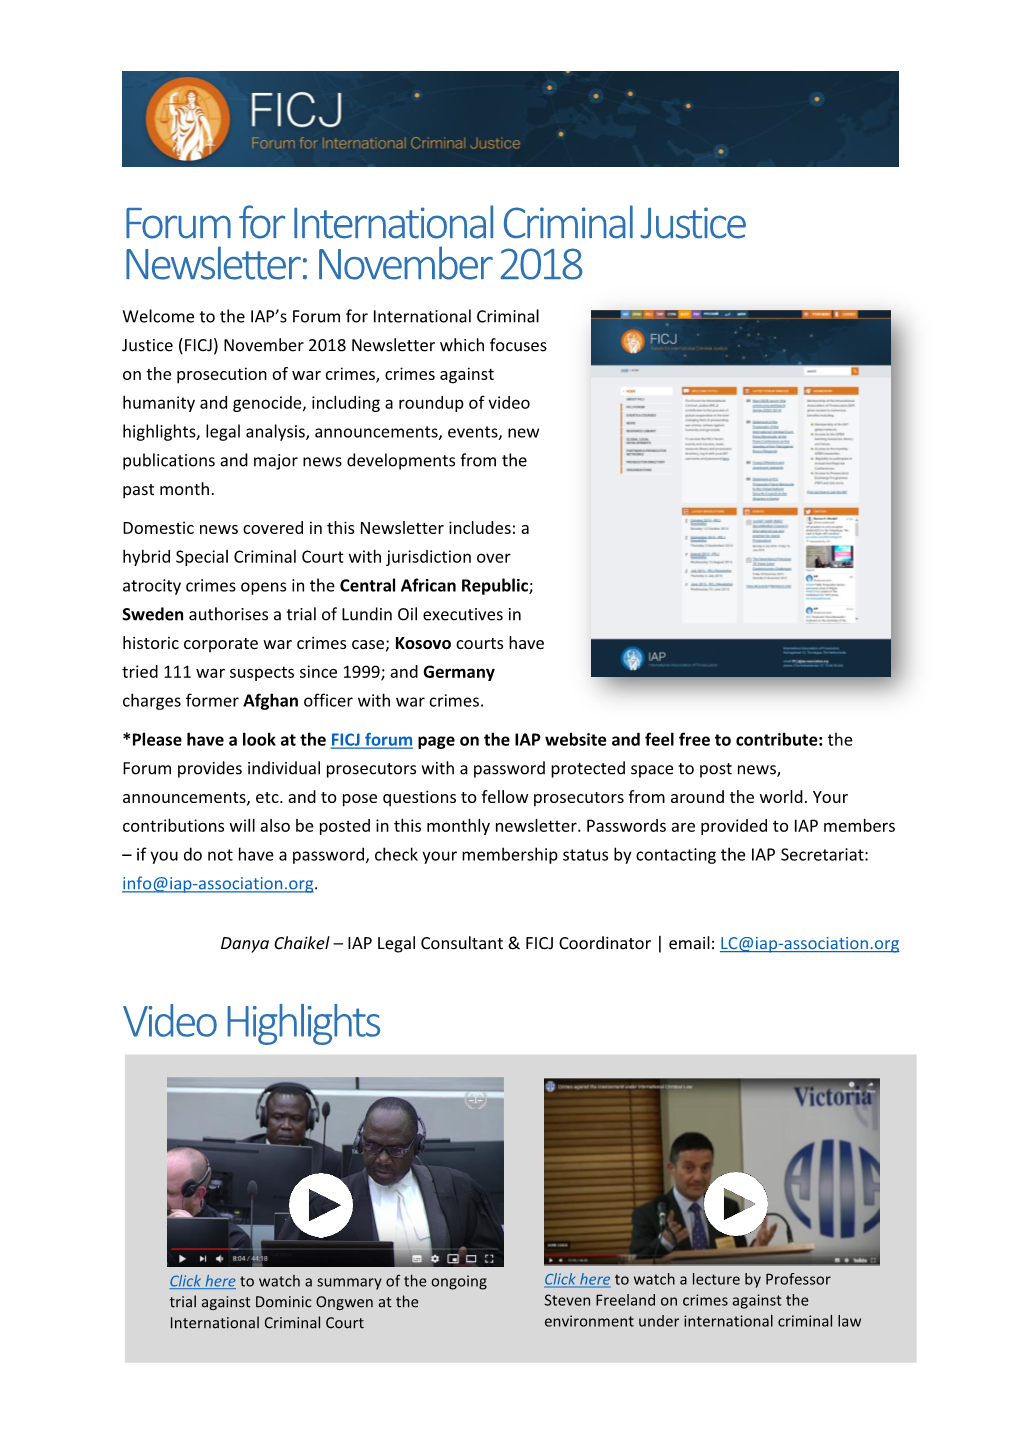 Forum for International Criminal Justice Newsletter: November 2018